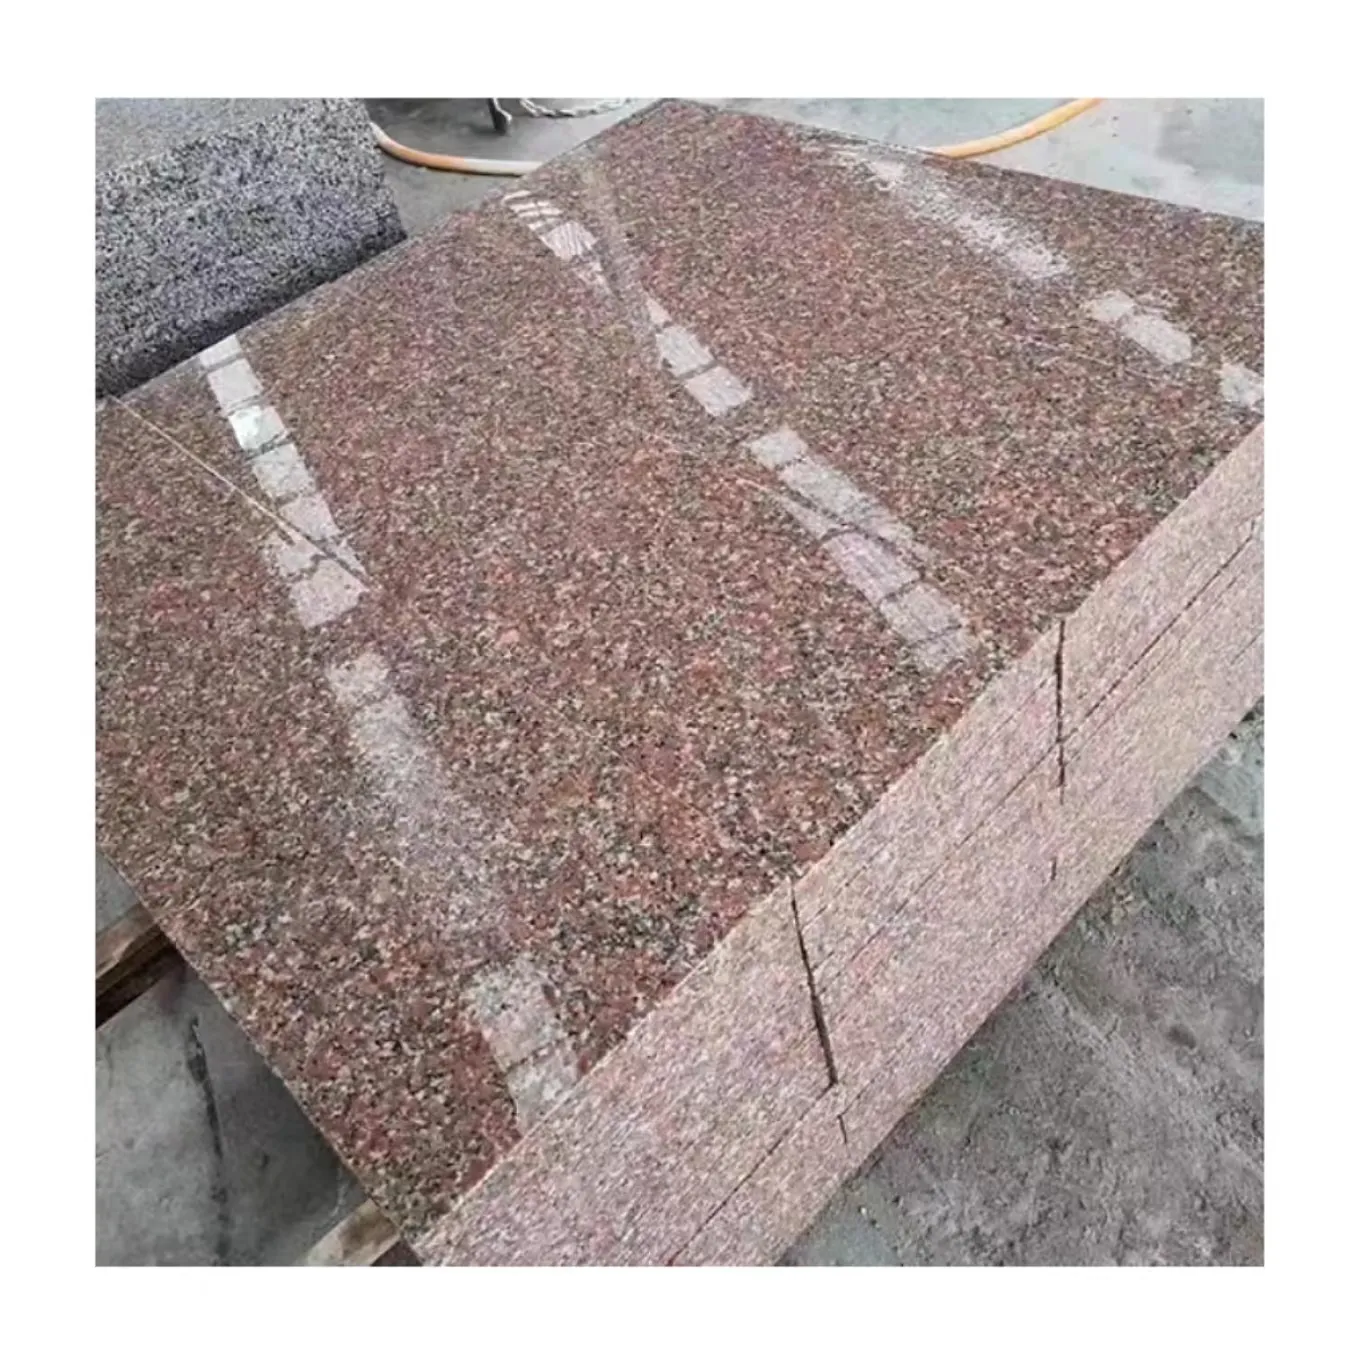 도매 중국 메이플 레드 화강암 천연 대리석 돌 바닥 계단 광택 된 화염 화강암 슬래브 사용자 정의